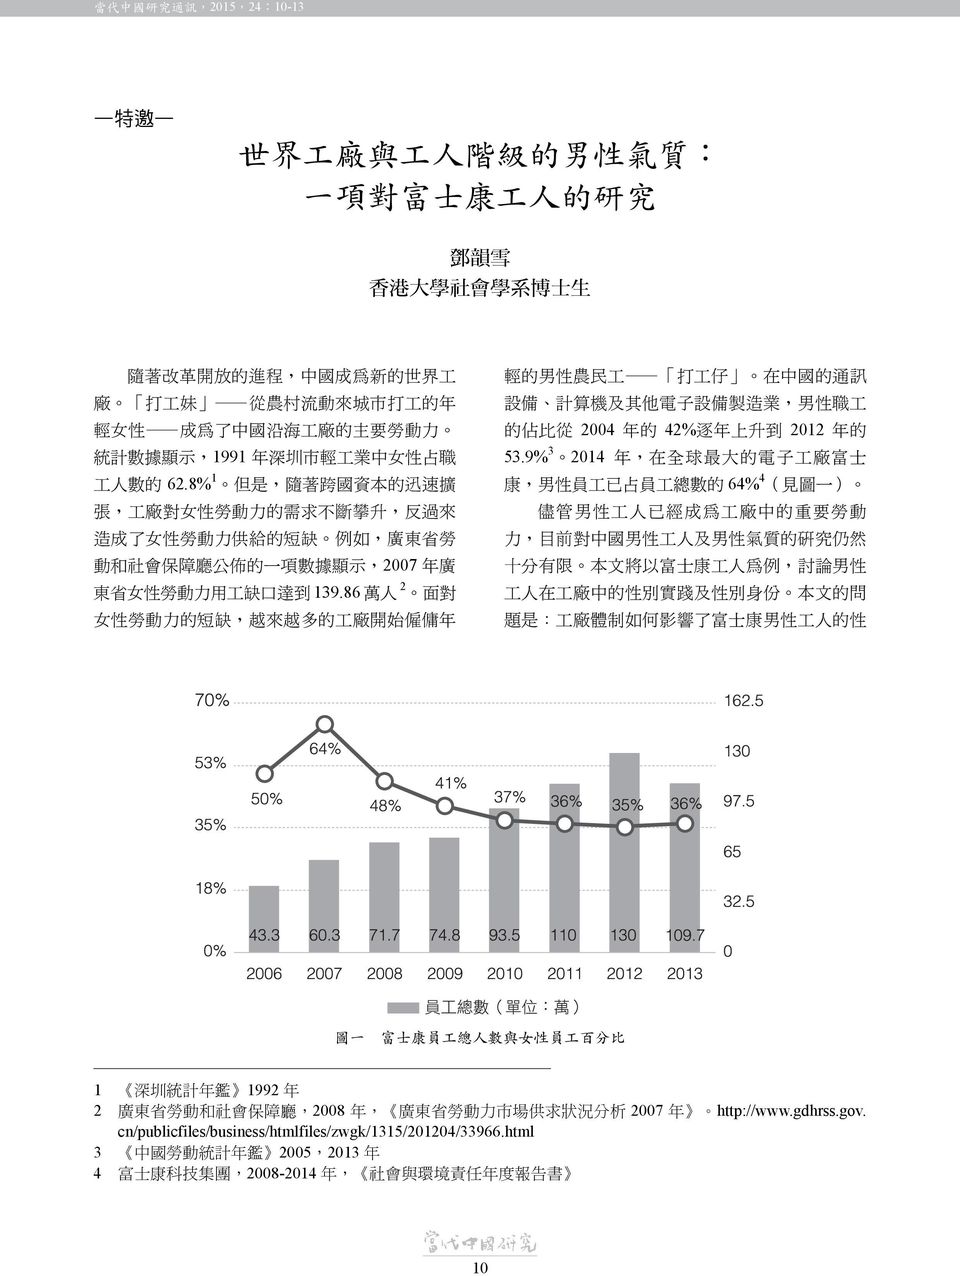 8%1 但是 隨著跨國資本的迅速擴 康 男性員工已占員工總數的 64%4 見圖一 張 工廠對女性勞動力的需求不斷攀升 反過來 儘管男性工人已經成為工廠中的重要勞動 造成了女性勞動力供給的短缺 例如 廣東省勞 力 目前對中國男性工人及男性氣質的研究仍然 動和社會保障廳公佈的一項數據顯示 2007 年廣 十分有限 本文將以富士康工人為例 討論男性 2